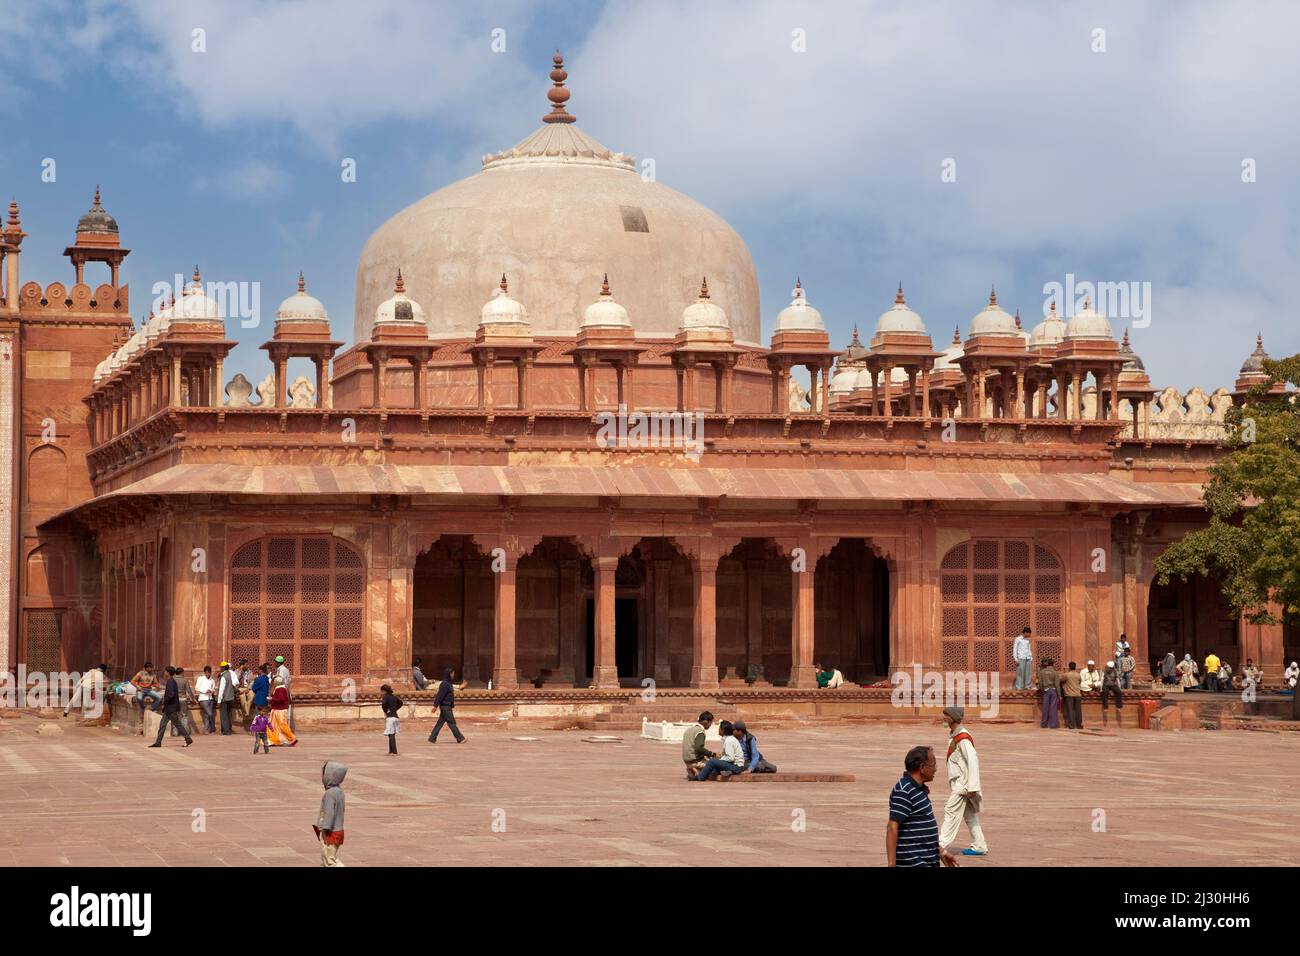 Fatehpur Sikri, Uttar Pradesh, India. Tomba dell'Islam Khan, all'interno del composto del Jama Masjid (Moschea di Dargah). Chhatris linea del tetto. Foto Stock